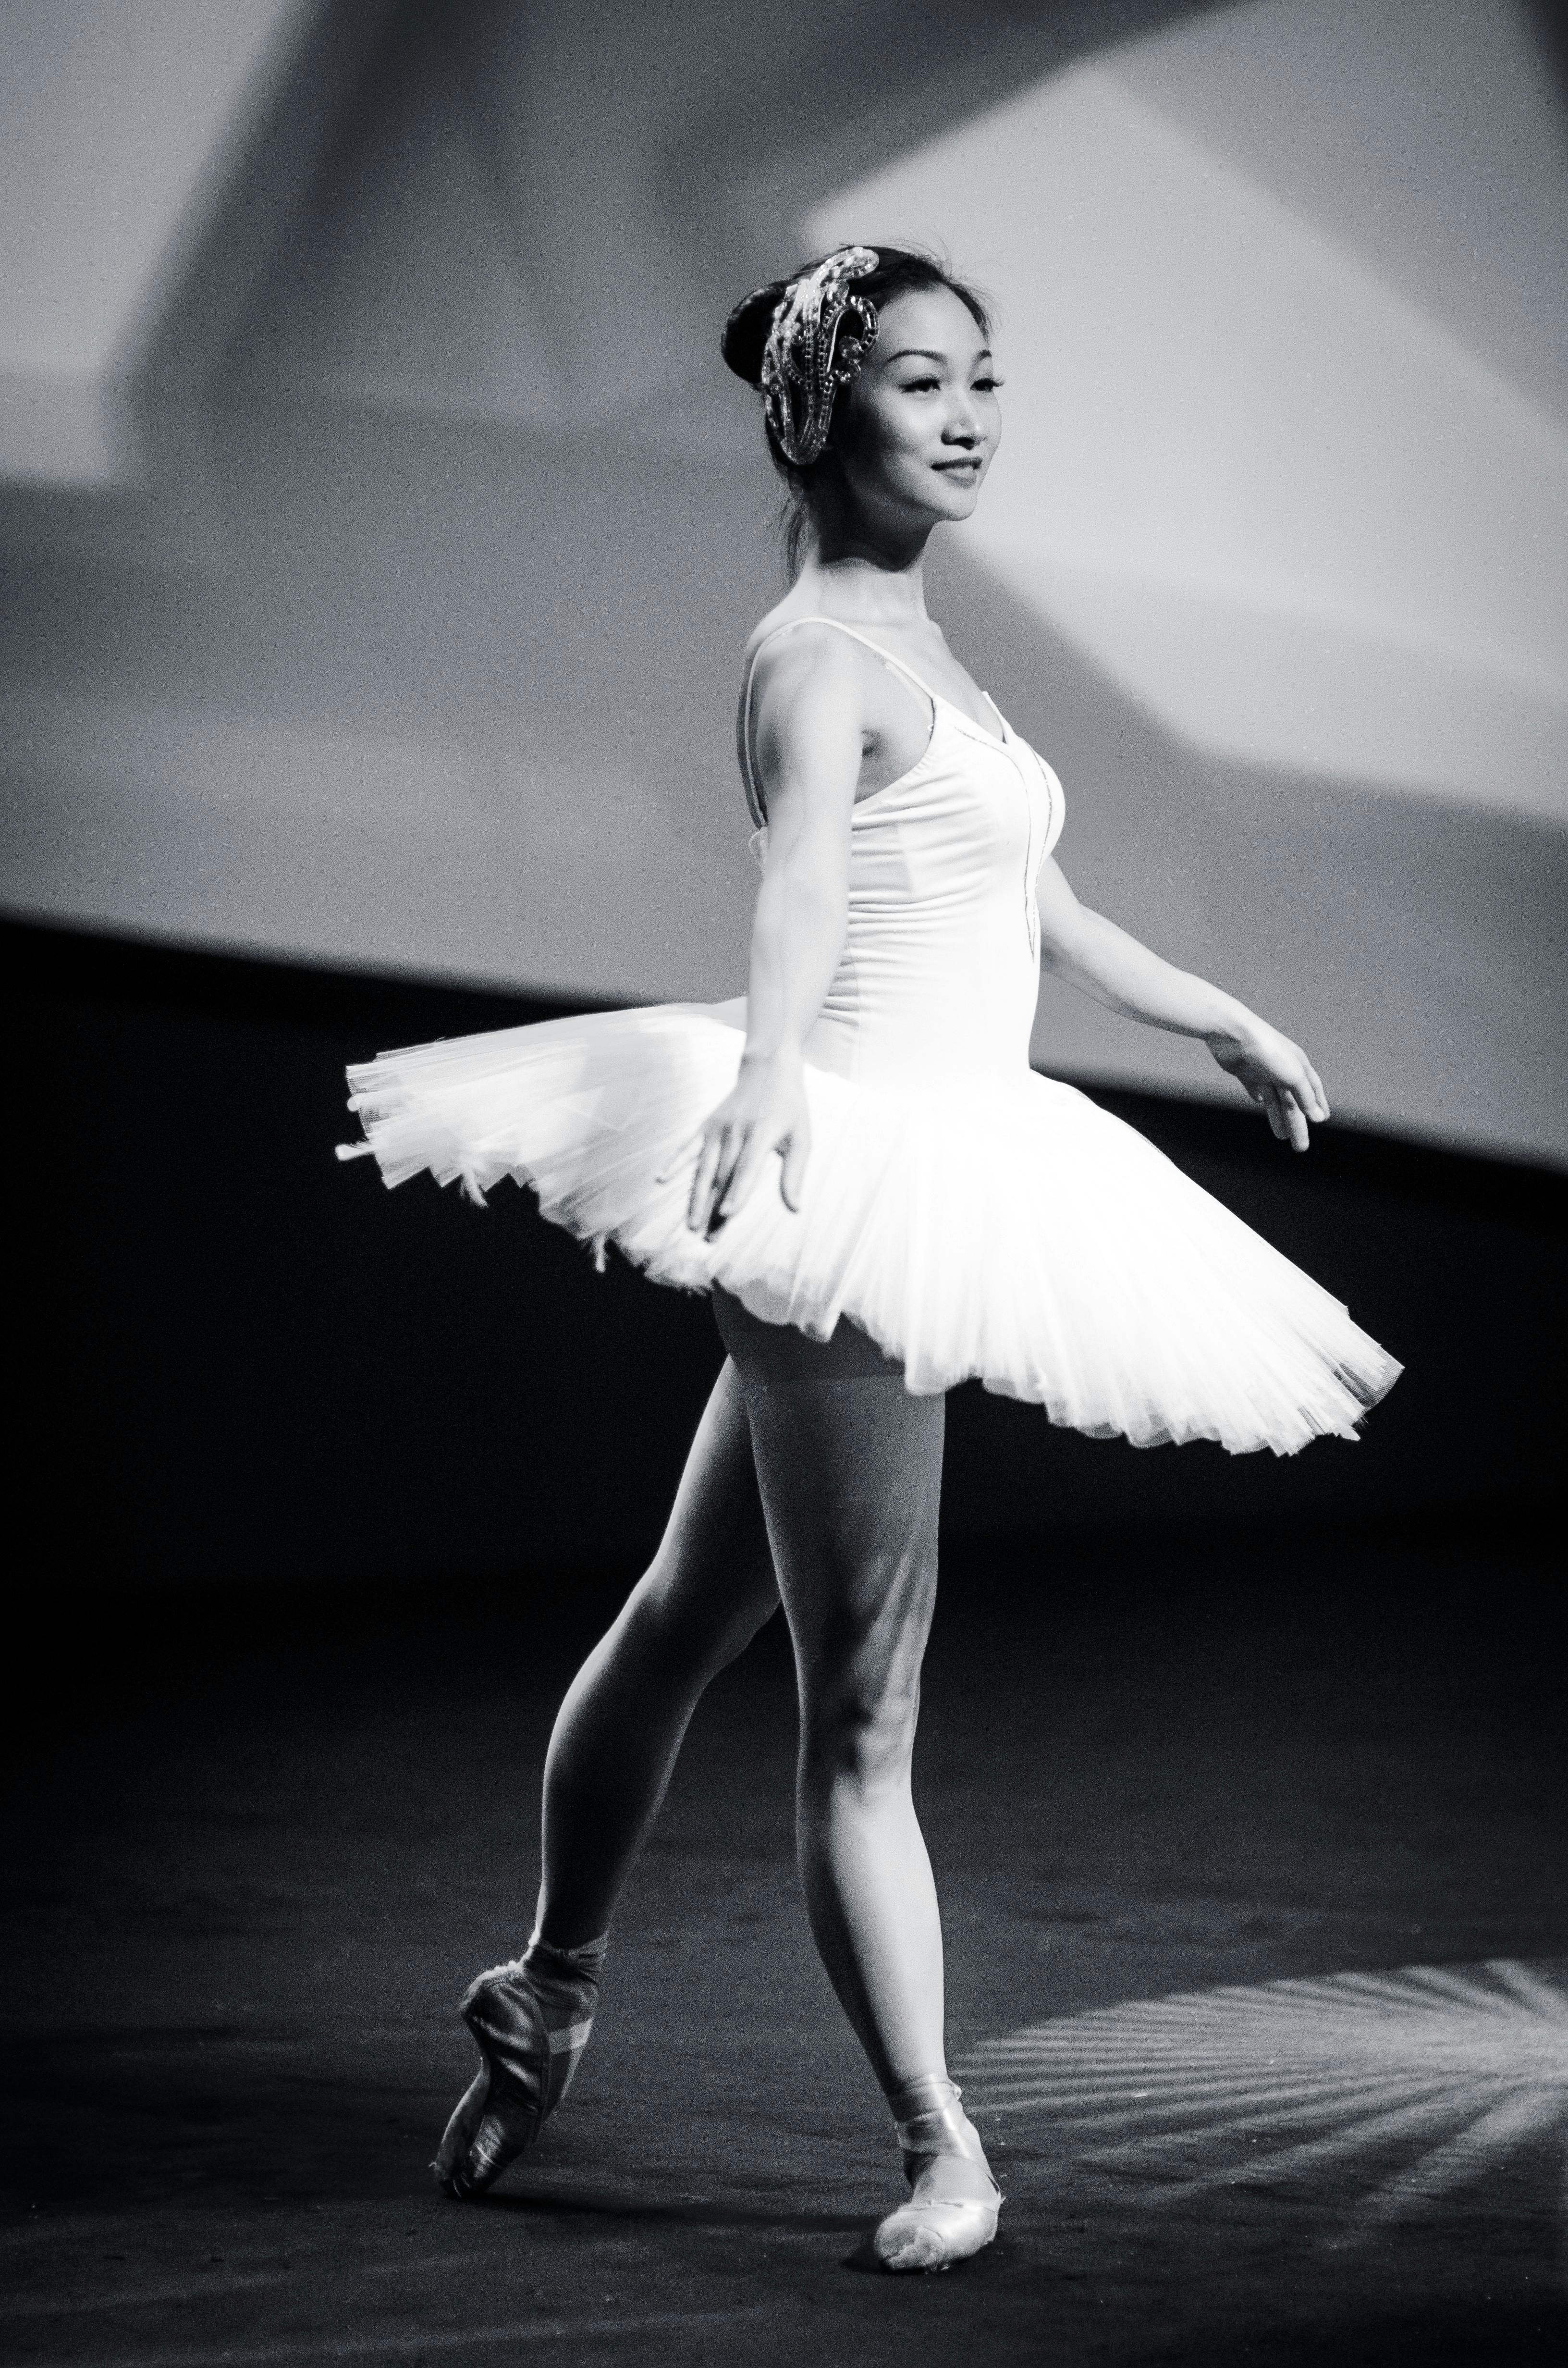 Ballet Bailarín Bailarina - Foto gratis en Pixabay - Pixabay